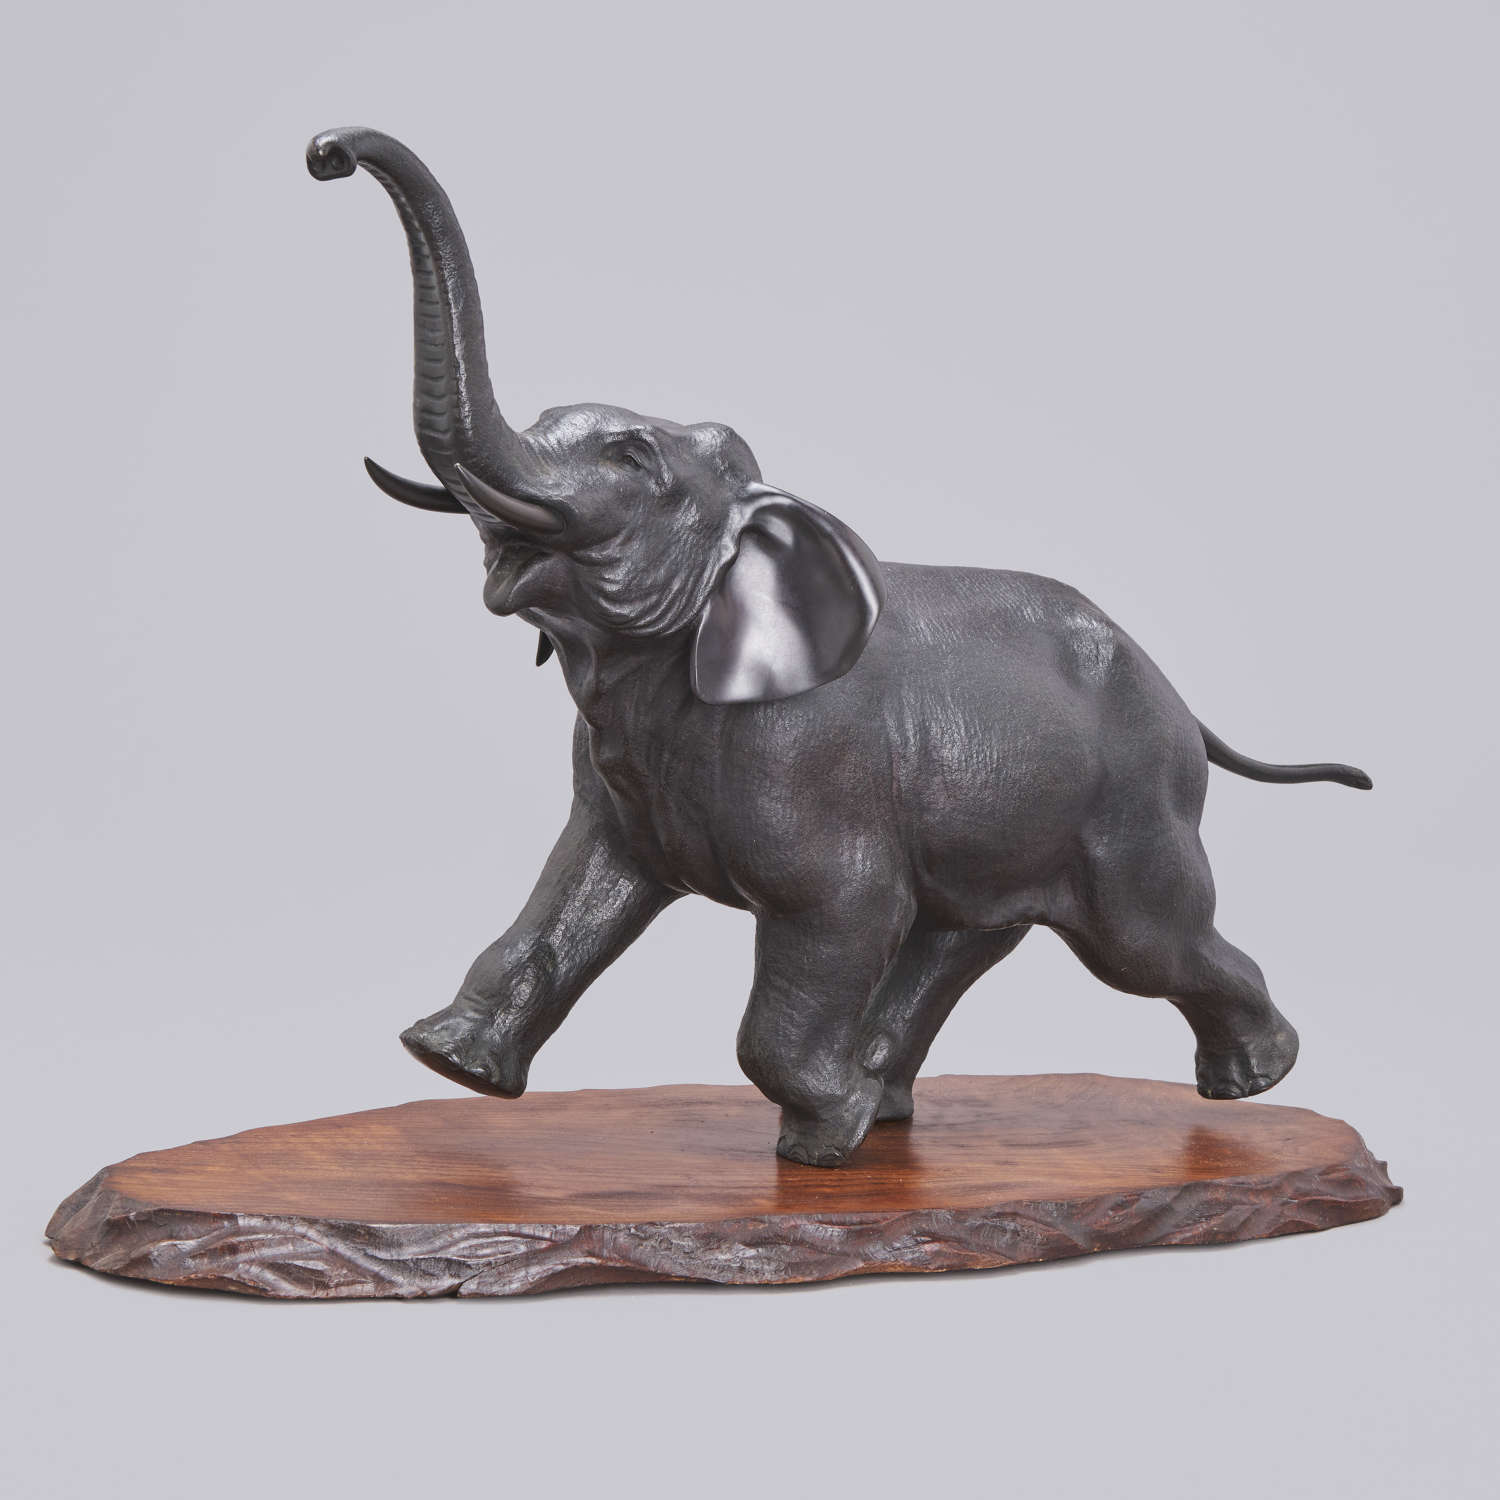 Japanese bronze elephant signed Atsuyoshi and Maruki Meiji period